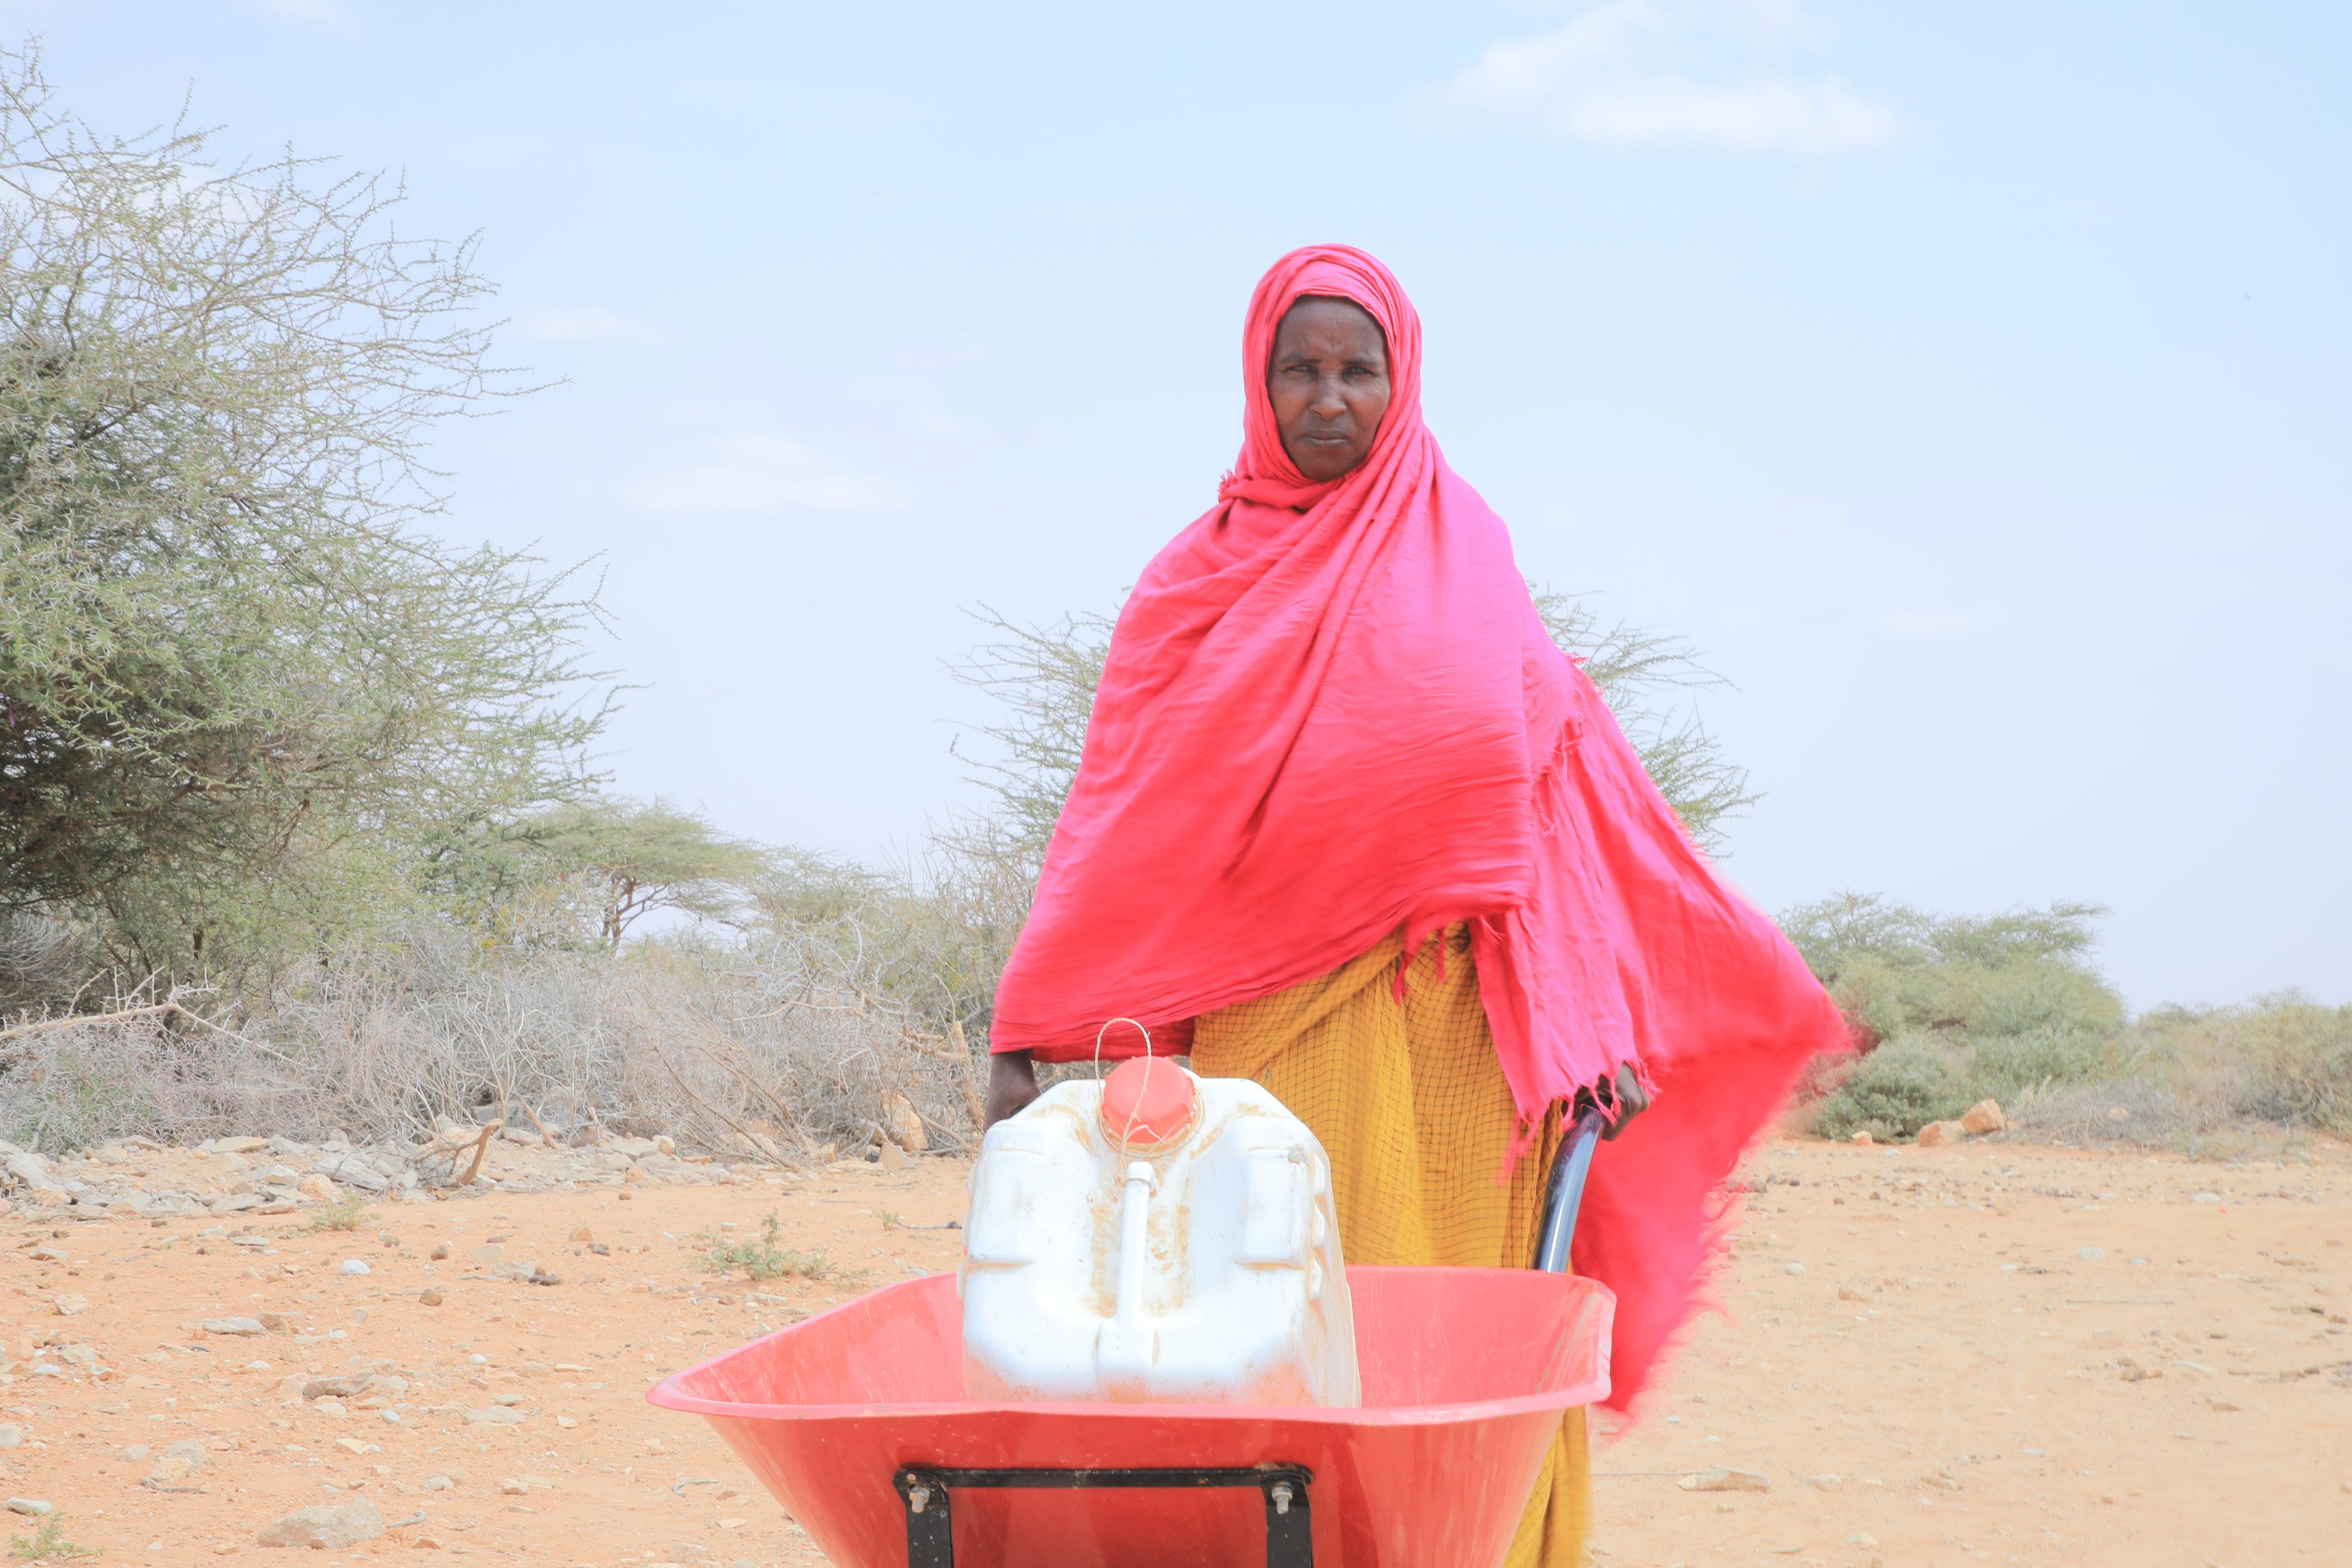 Anisa Jama Hassan hält eine große rote Schubkarre in den Händen, die mit einem Wasserkanister beladen ist. Sie trägt ein pinkes Obergewand und ein gelbes Untergewand. Im Hintergrund ist eine wüstenähnliche Landschaft zu sehen. 